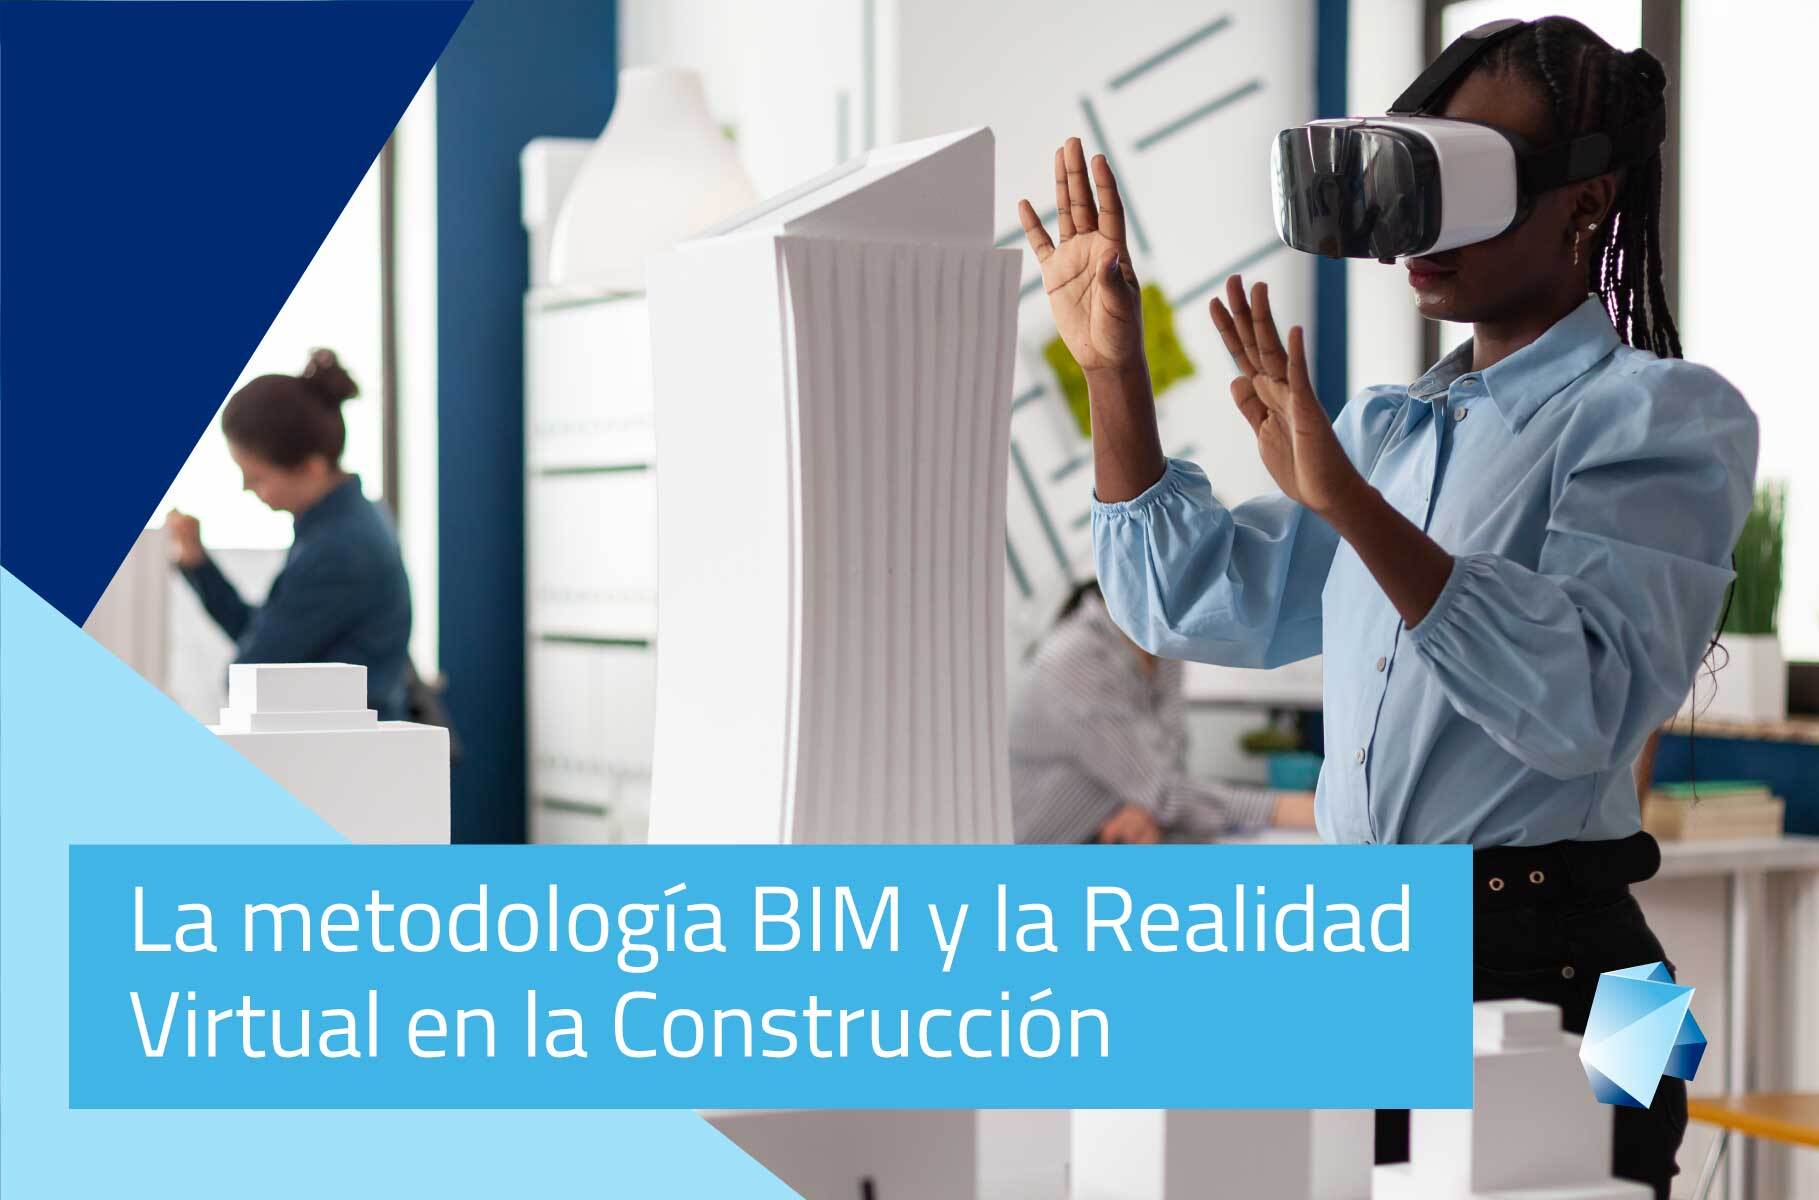 La metodología BIM y la Realidad Virtual en la Construcción